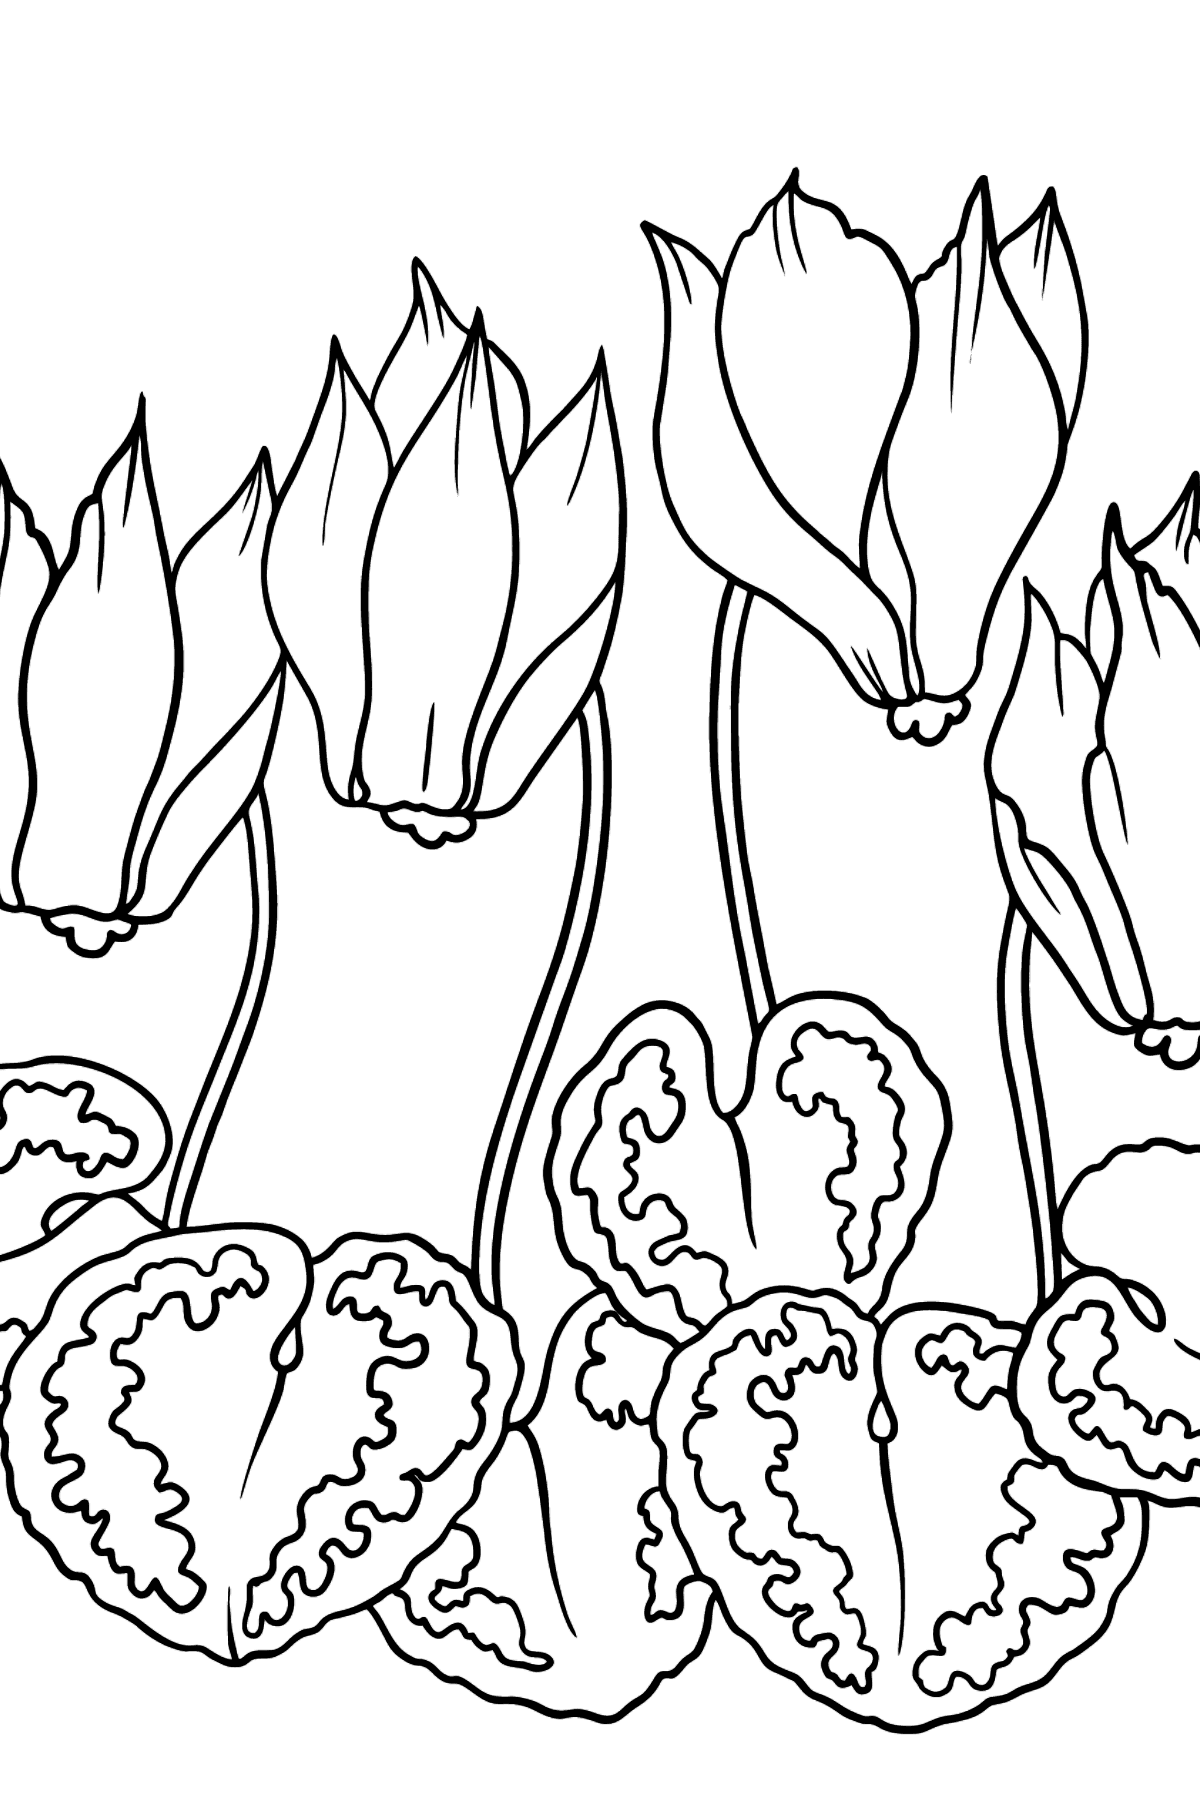 Tegning til fargelegging Cyclamen blomst (enkelt) - Tegninger til fargelegging for barn